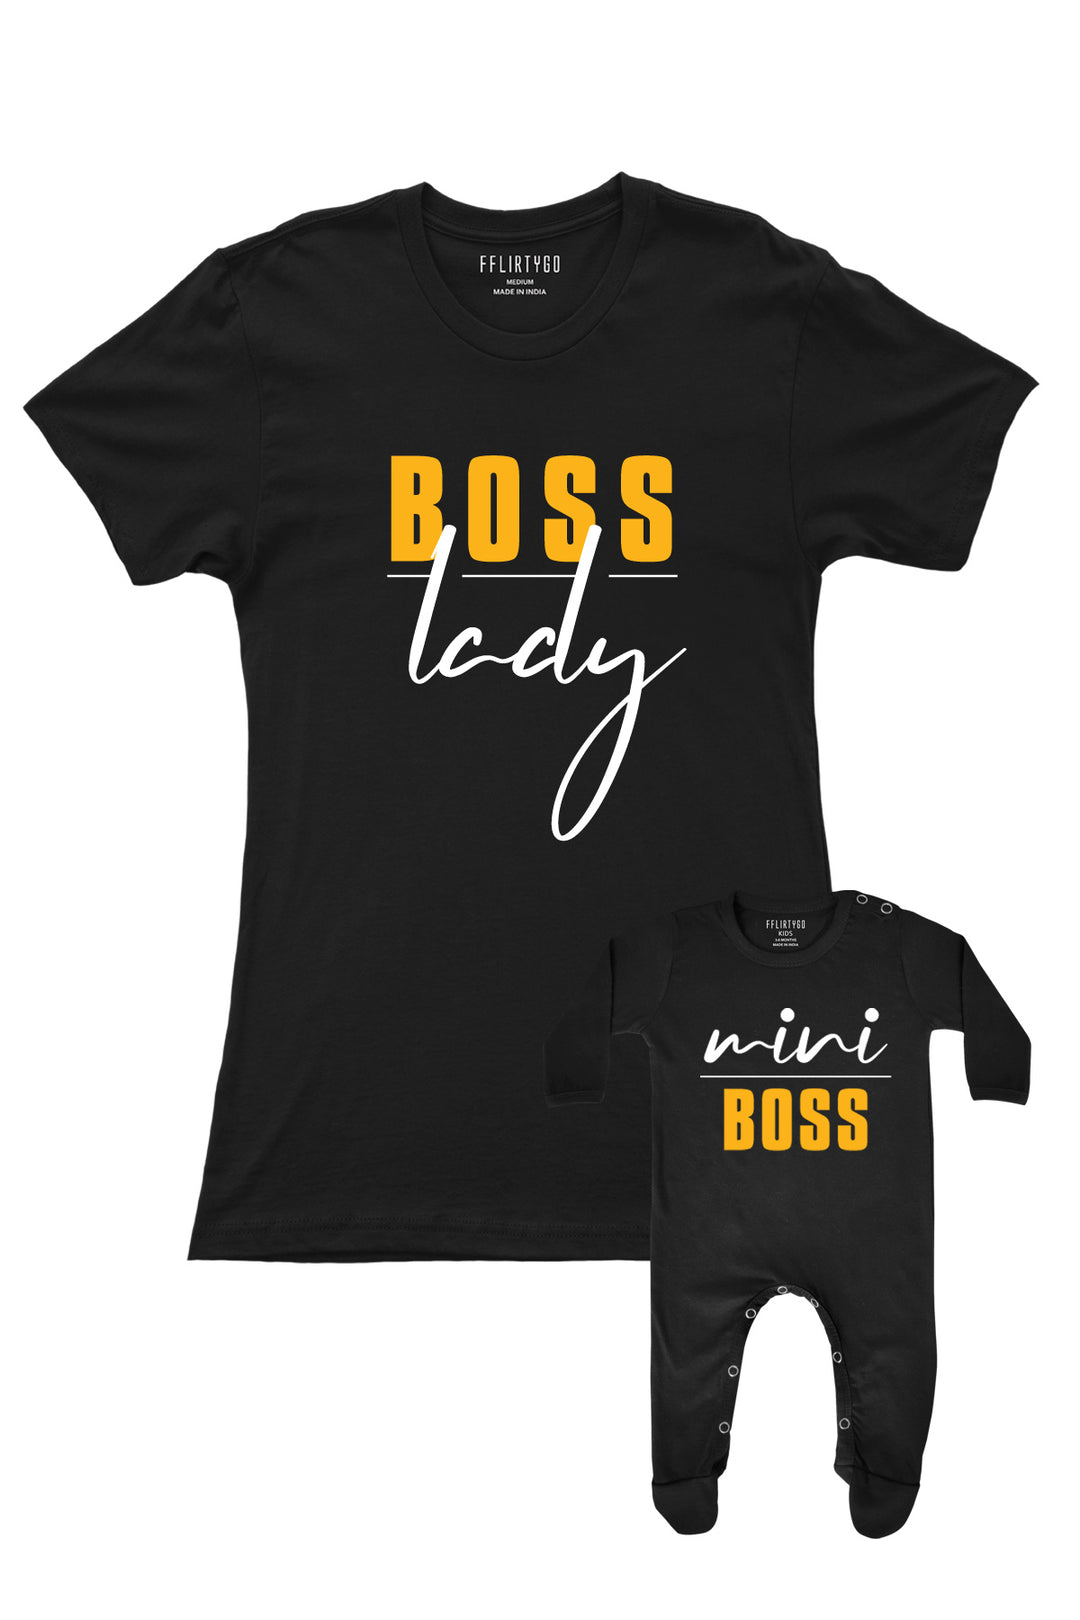 Boss Lady - Mini Boss